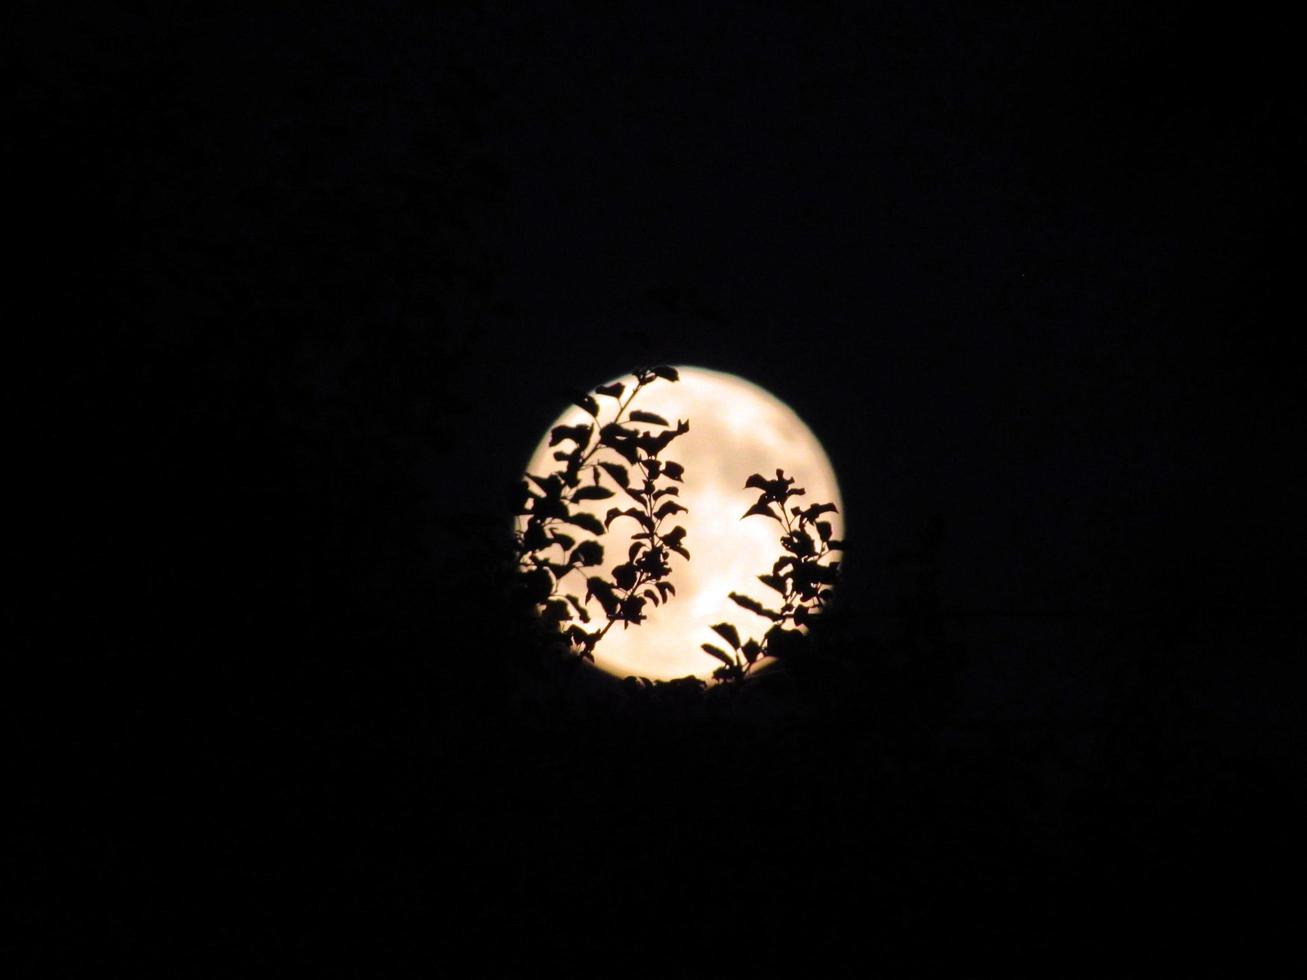 trädgrenar på fullmånebakgrund. nattskogens mystiska atmosfär. foto